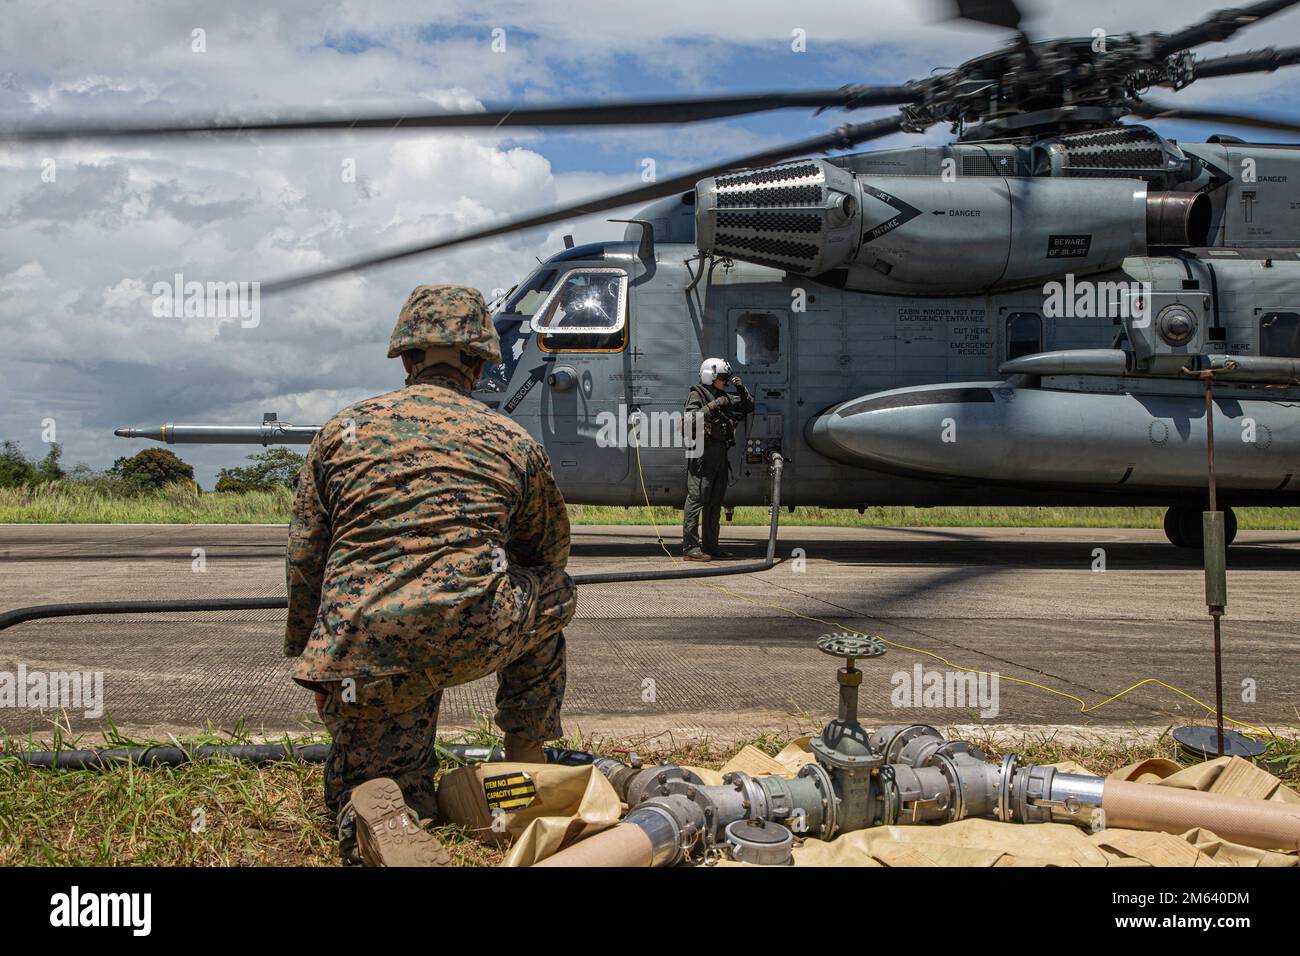 Los Marines de EE.UU. Asignados al Escuadrón de Helicópteros Pesados Marinos 466 (HMH-466), realimentan a un Super Stallion CH-53E en un punto de armado y reabastecimiento hacia adelante durante Balikatan 22 en Cagayan, Filipinas, el 29 de marzo de 2022. Balikatan es un ejercicio anual entre las Fuerzas Armadas de Filipinas y las fuerzas armadas estadounidenses diseñado para fortalecer la interoperabilidad bilateral, las capacidades, la confianza y la cooperación construidas a lo largo de décadas de experiencias compartidas. Balikatan, Tagalog por «hombro a hombro», es un ejercicio bilateral de larga data entre Filipinas y Estados Unidos que destaca la asociación profundamente arraigada Foto de stock